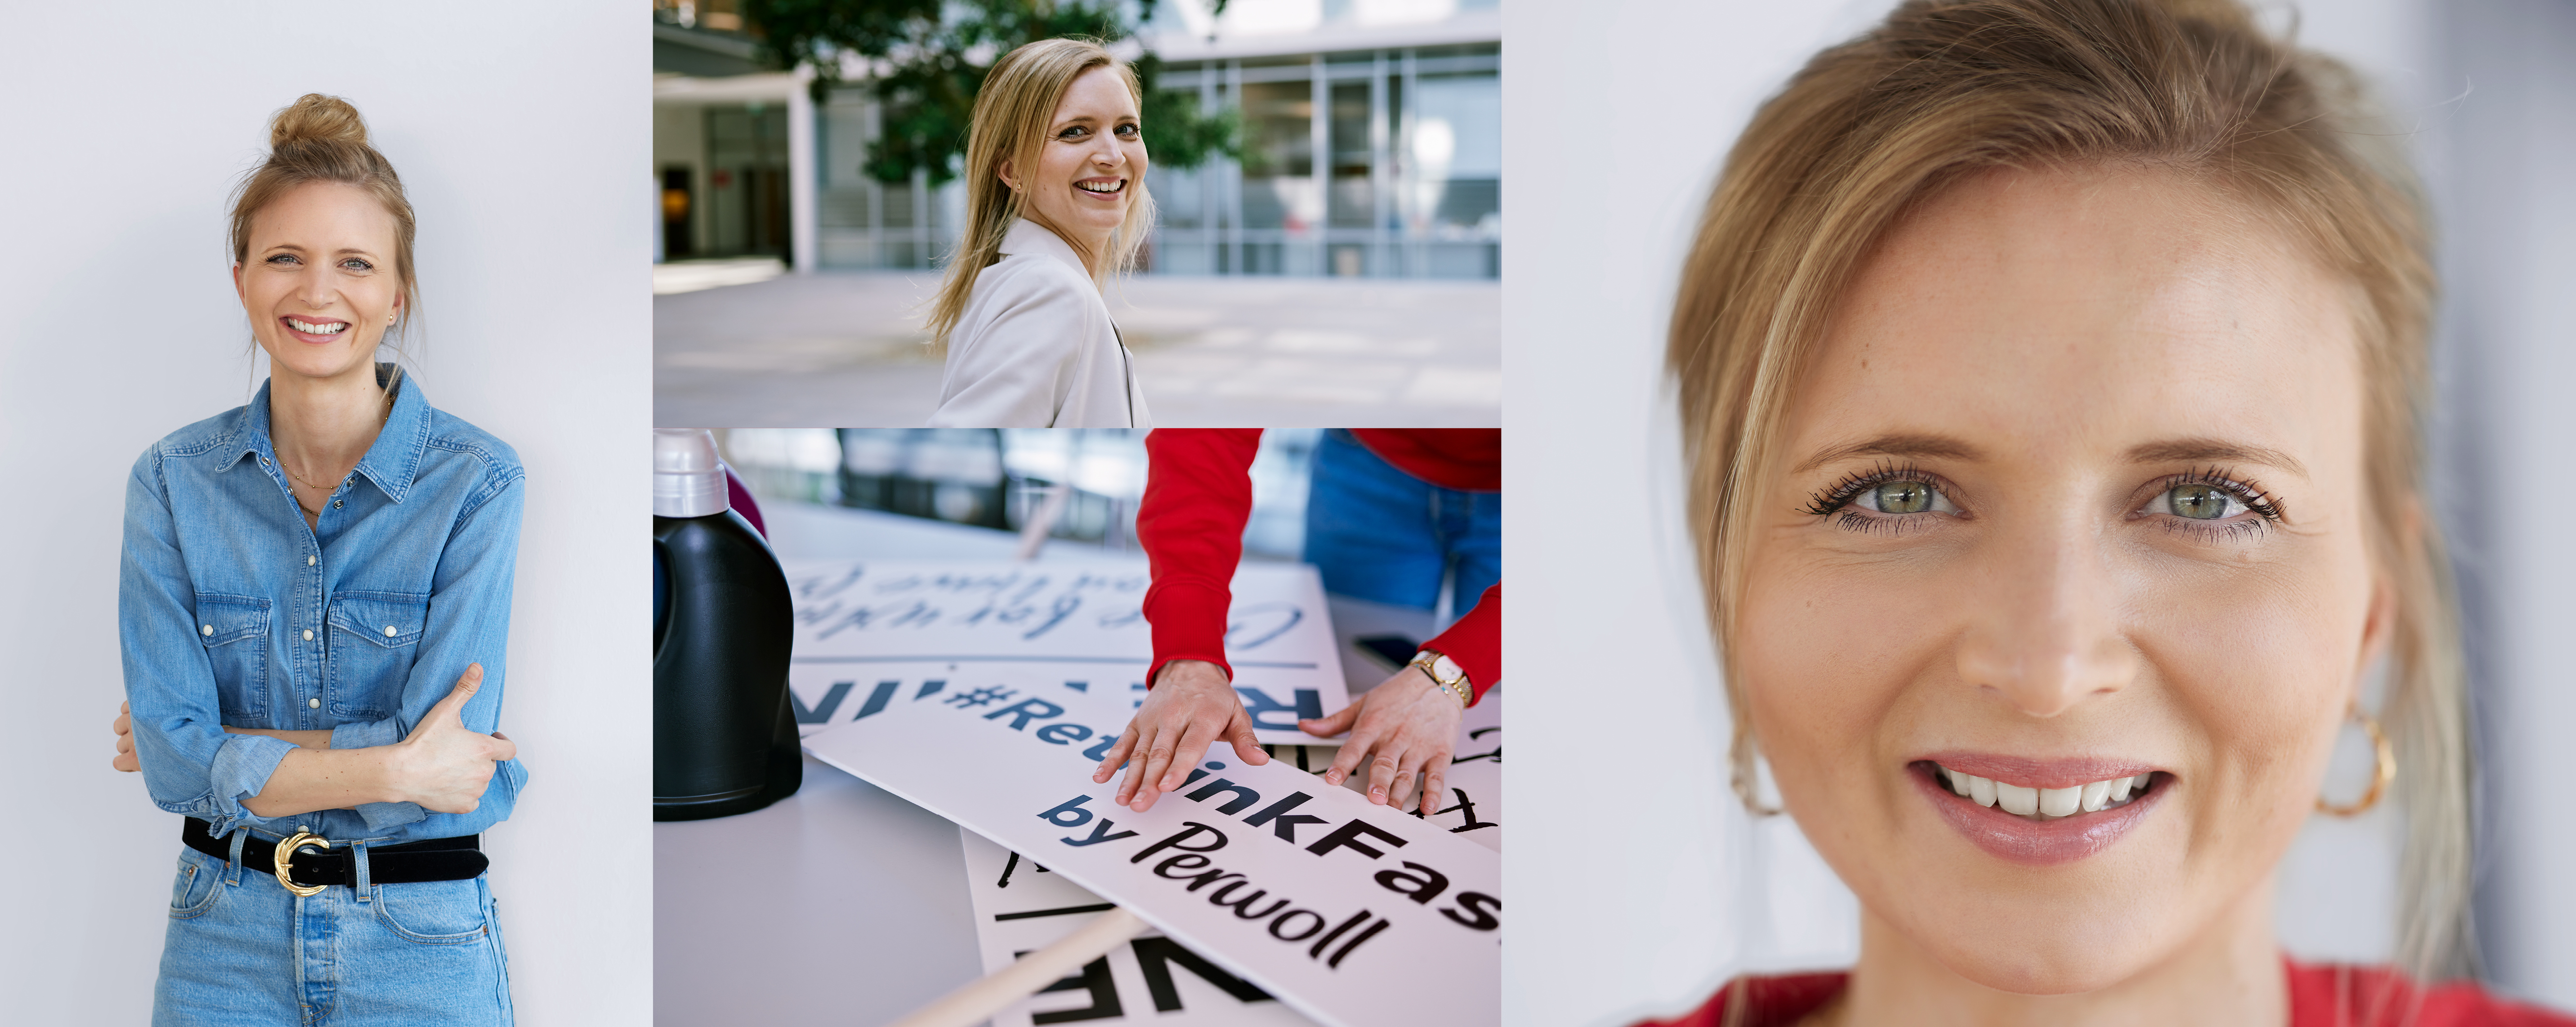 Співробітниця Хенкель перед своїм робочим місцем. Вона позує на камеру, сортує слогани з кампанії #Rethink Fashion для Persil і посміхається.